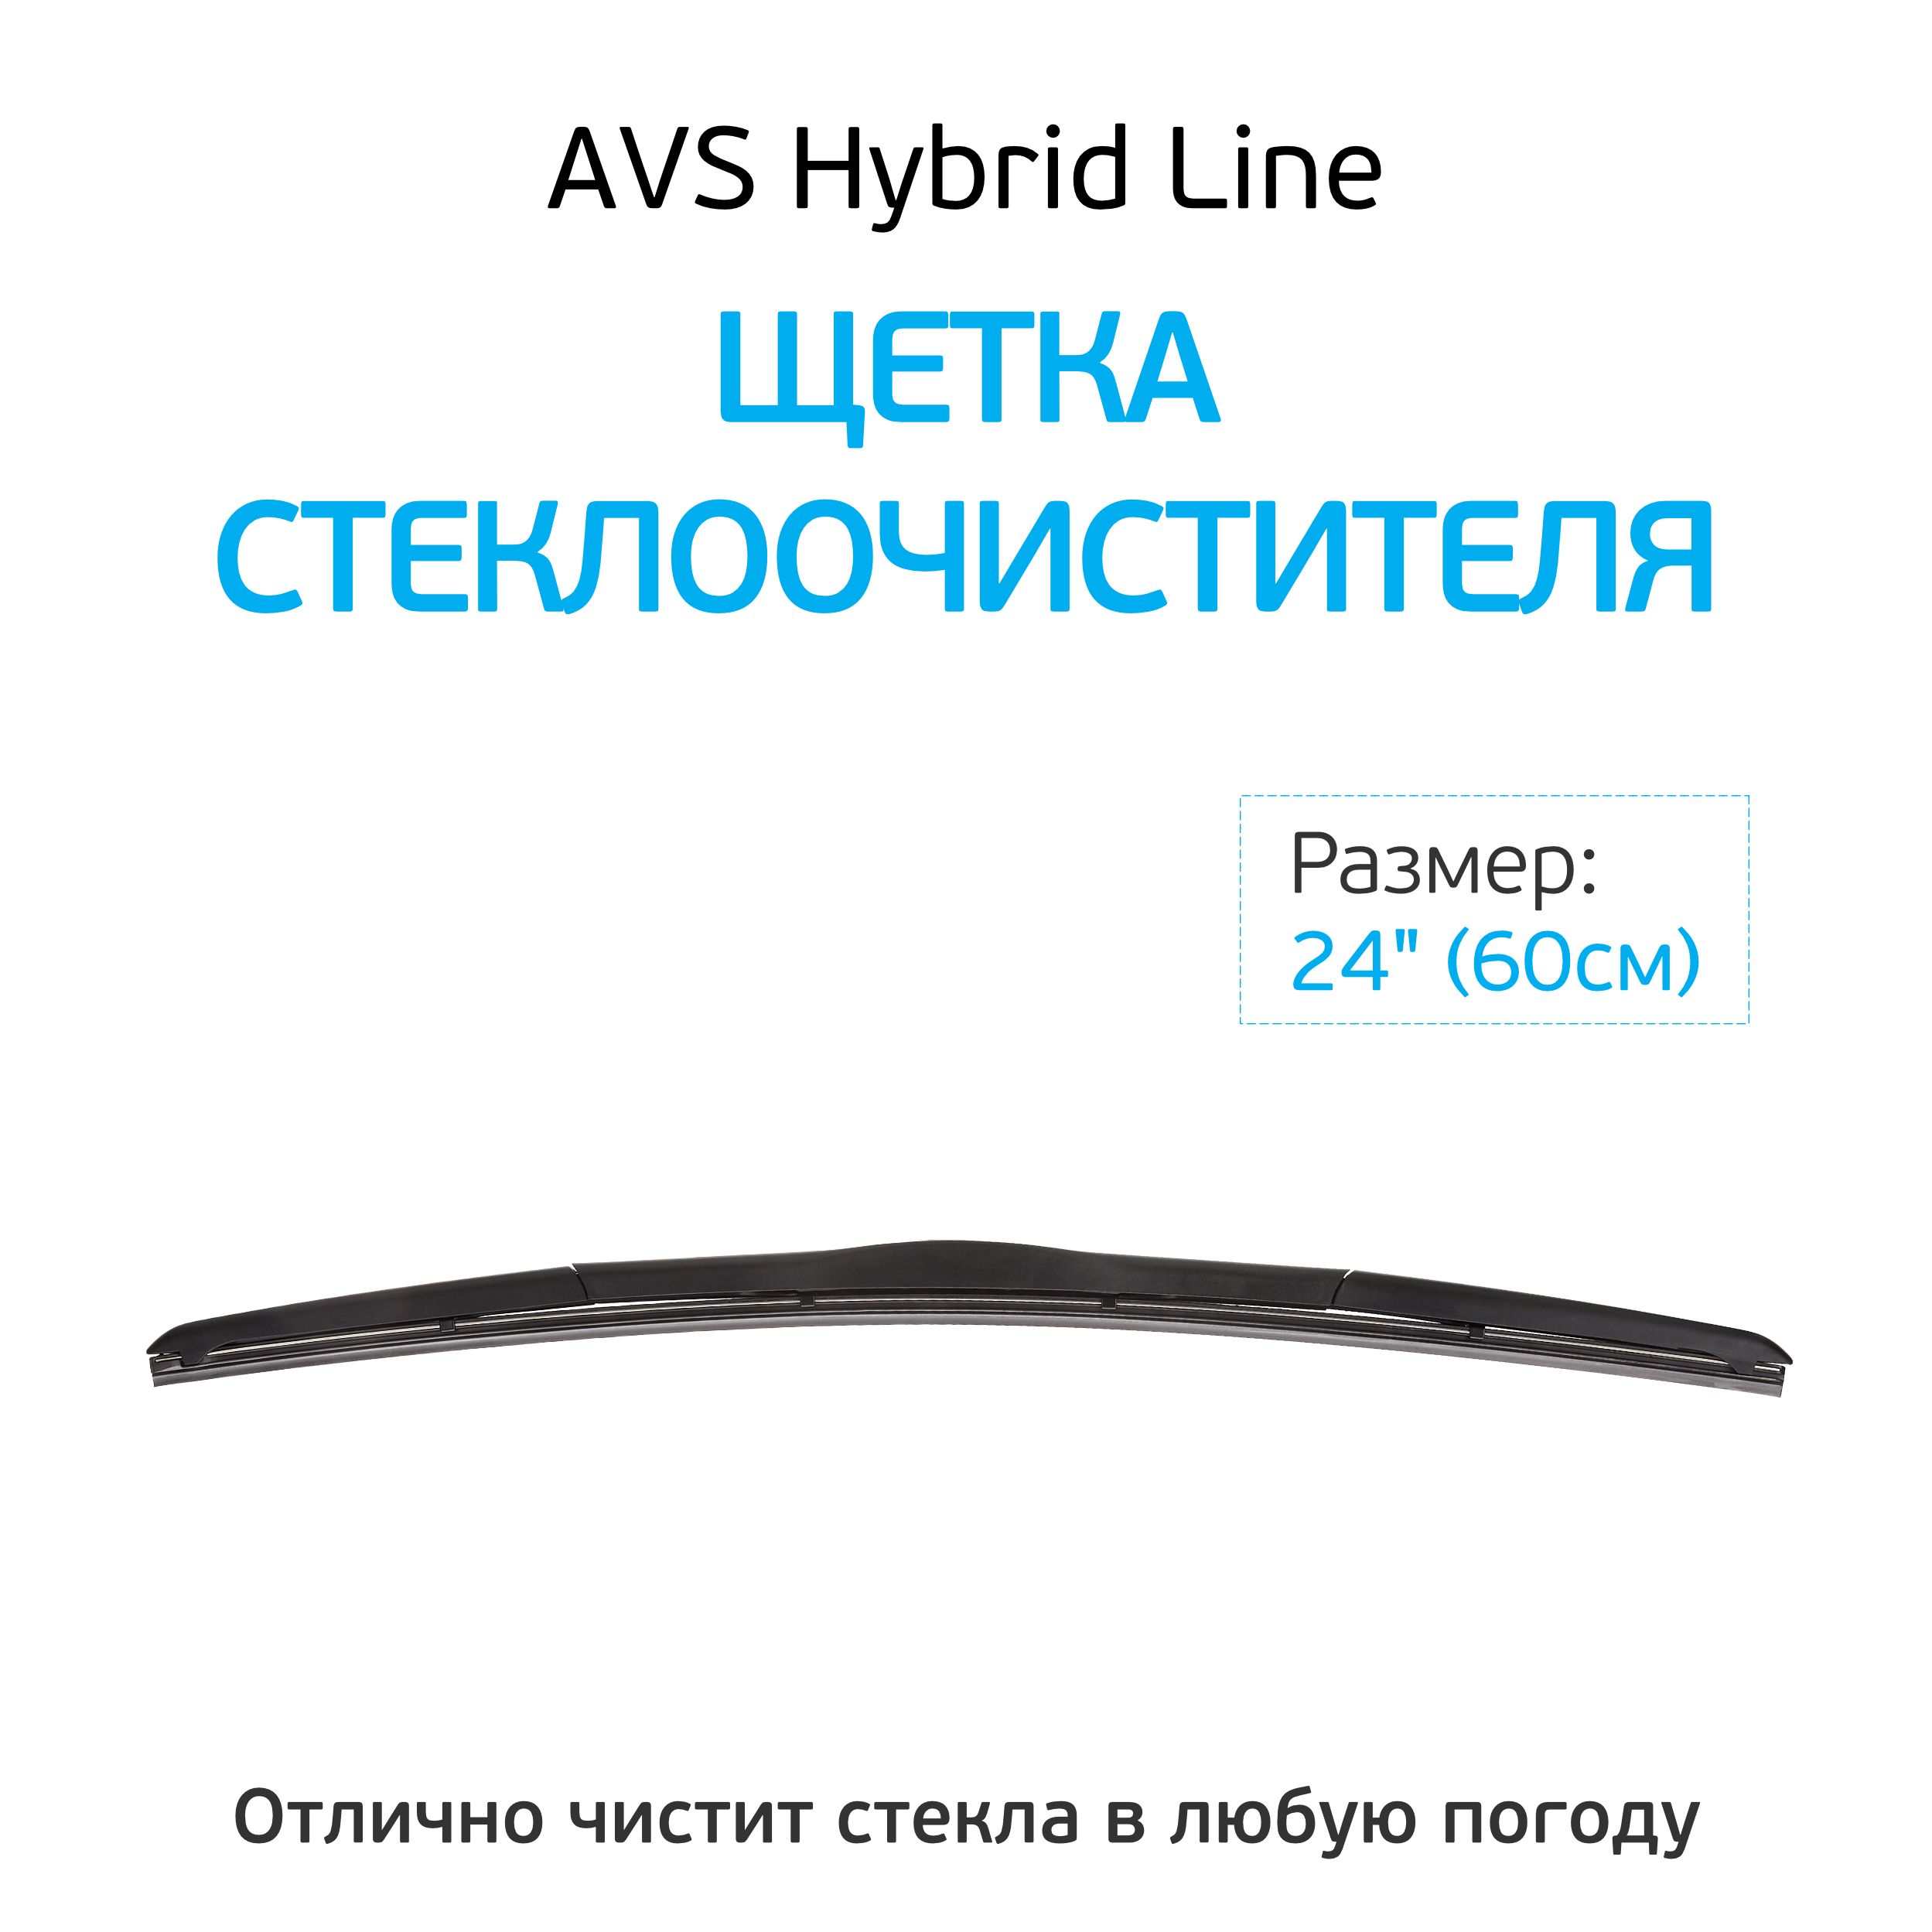 Щетка стеклоочистителя гибридная AVS Hybrid line hw. Щетка стеклоочистителя AVS Hybrid line hw-24 (60 см). Щетка стеклоочистителя 50см AVS Hybrid line hw-20. Щётка стеклоочистителя гибридная 600мм. Hybrid line